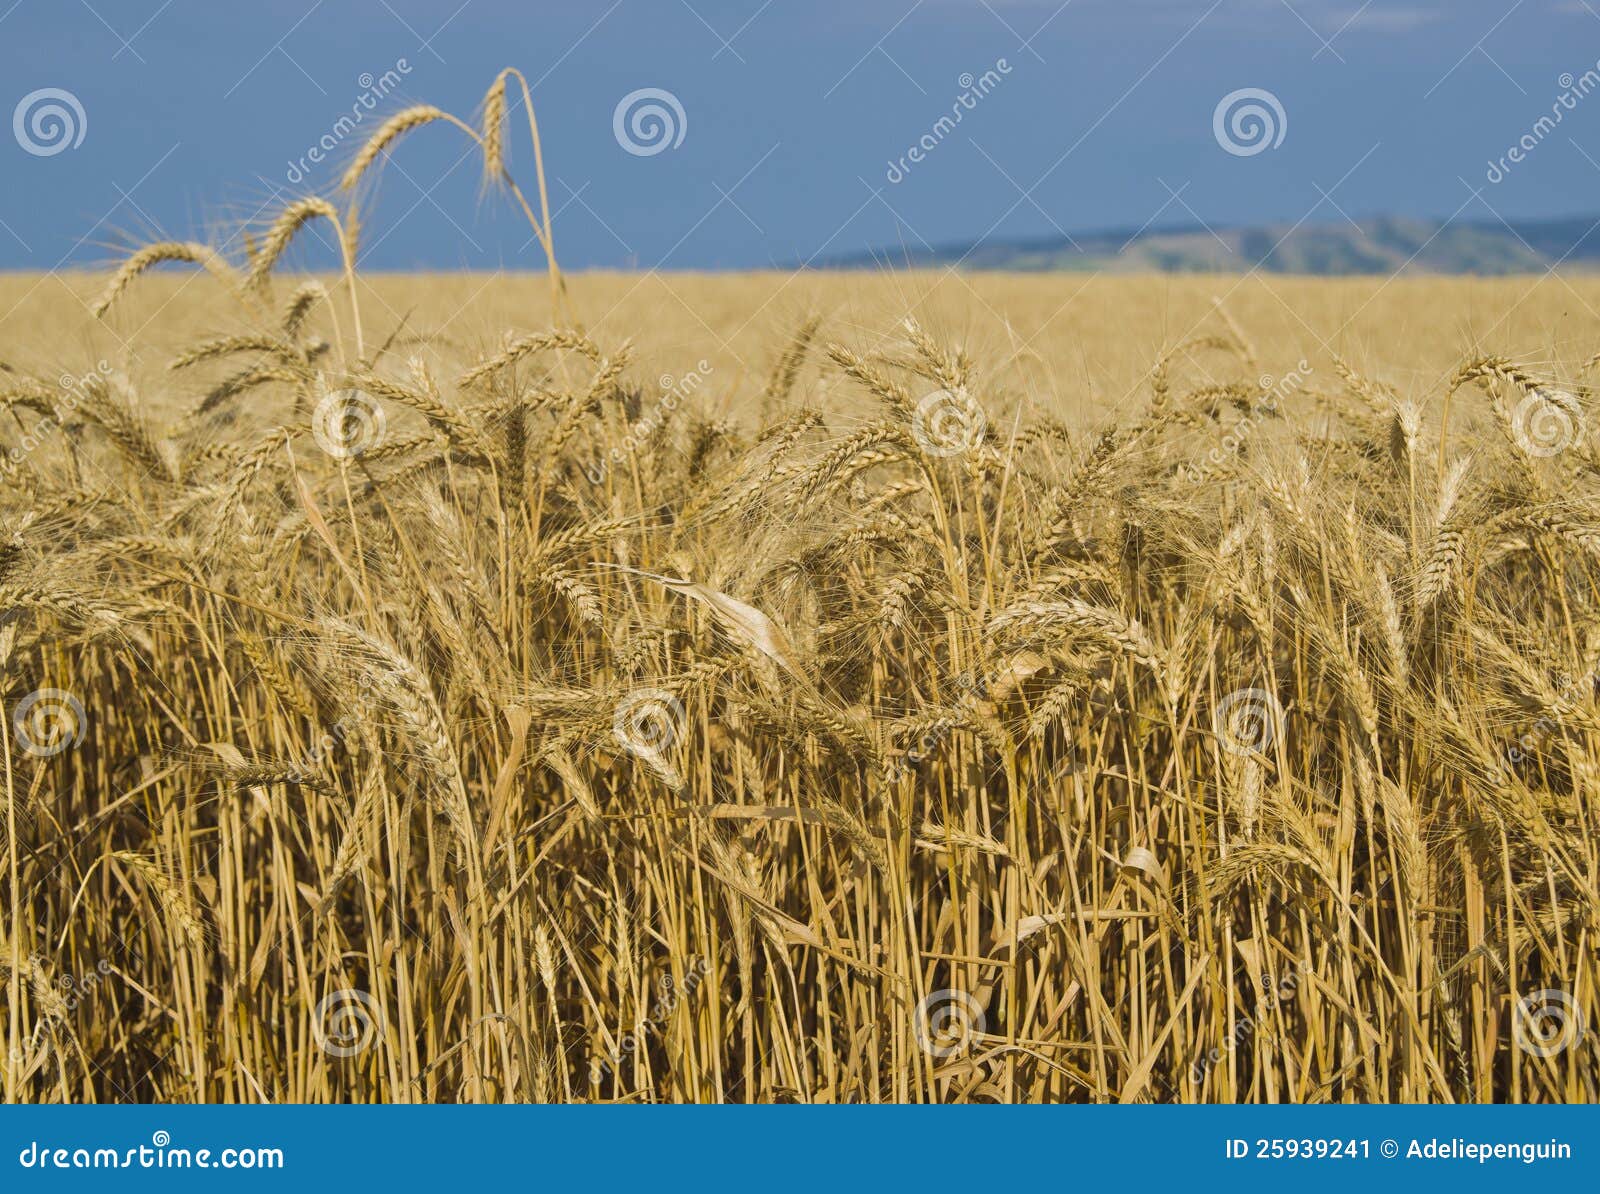 fields of wheat, palouse, washington